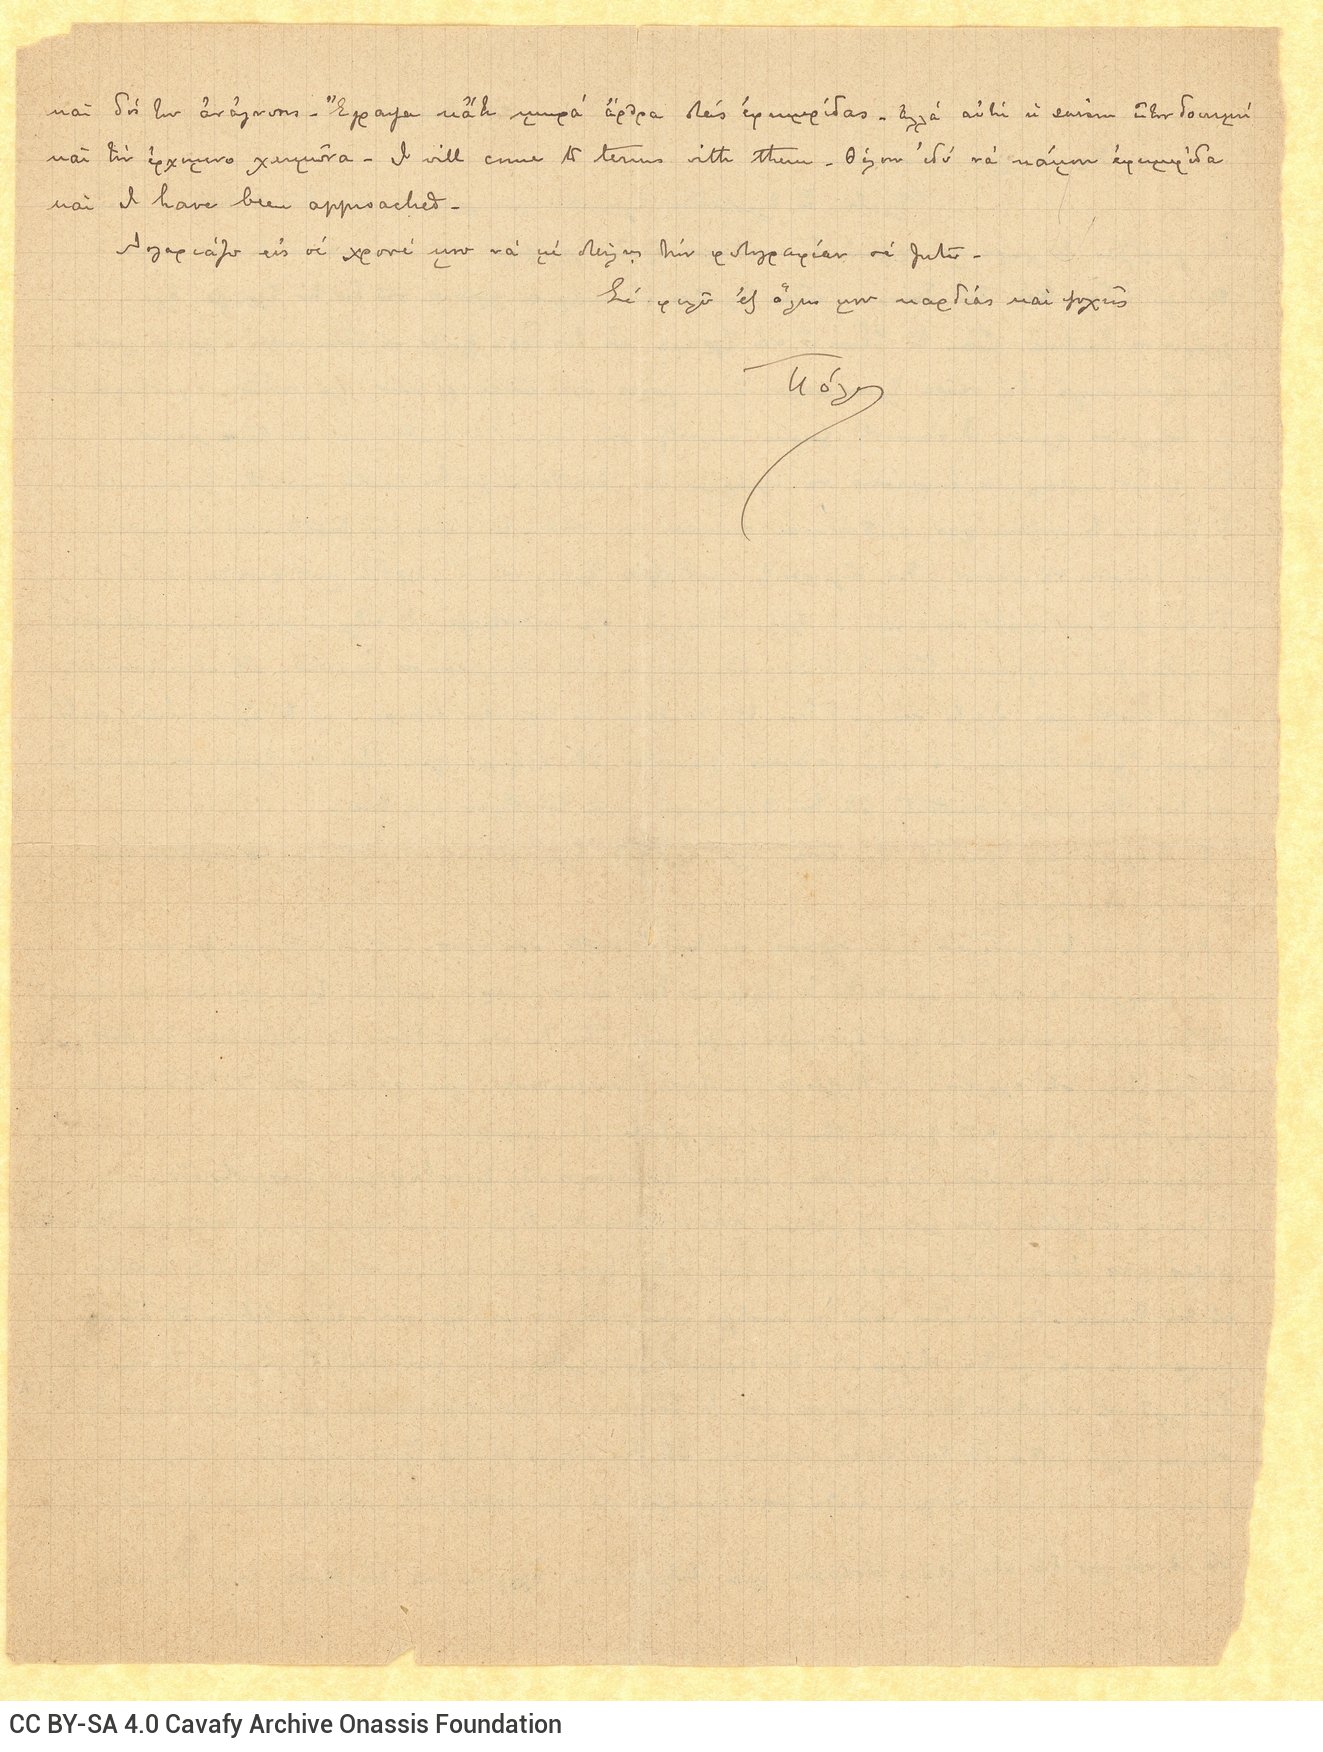 Χειρόγραφη επιστολή του Παύλου Καβάφη προς τον Κ. Π. Καβάφη από τη Γα�